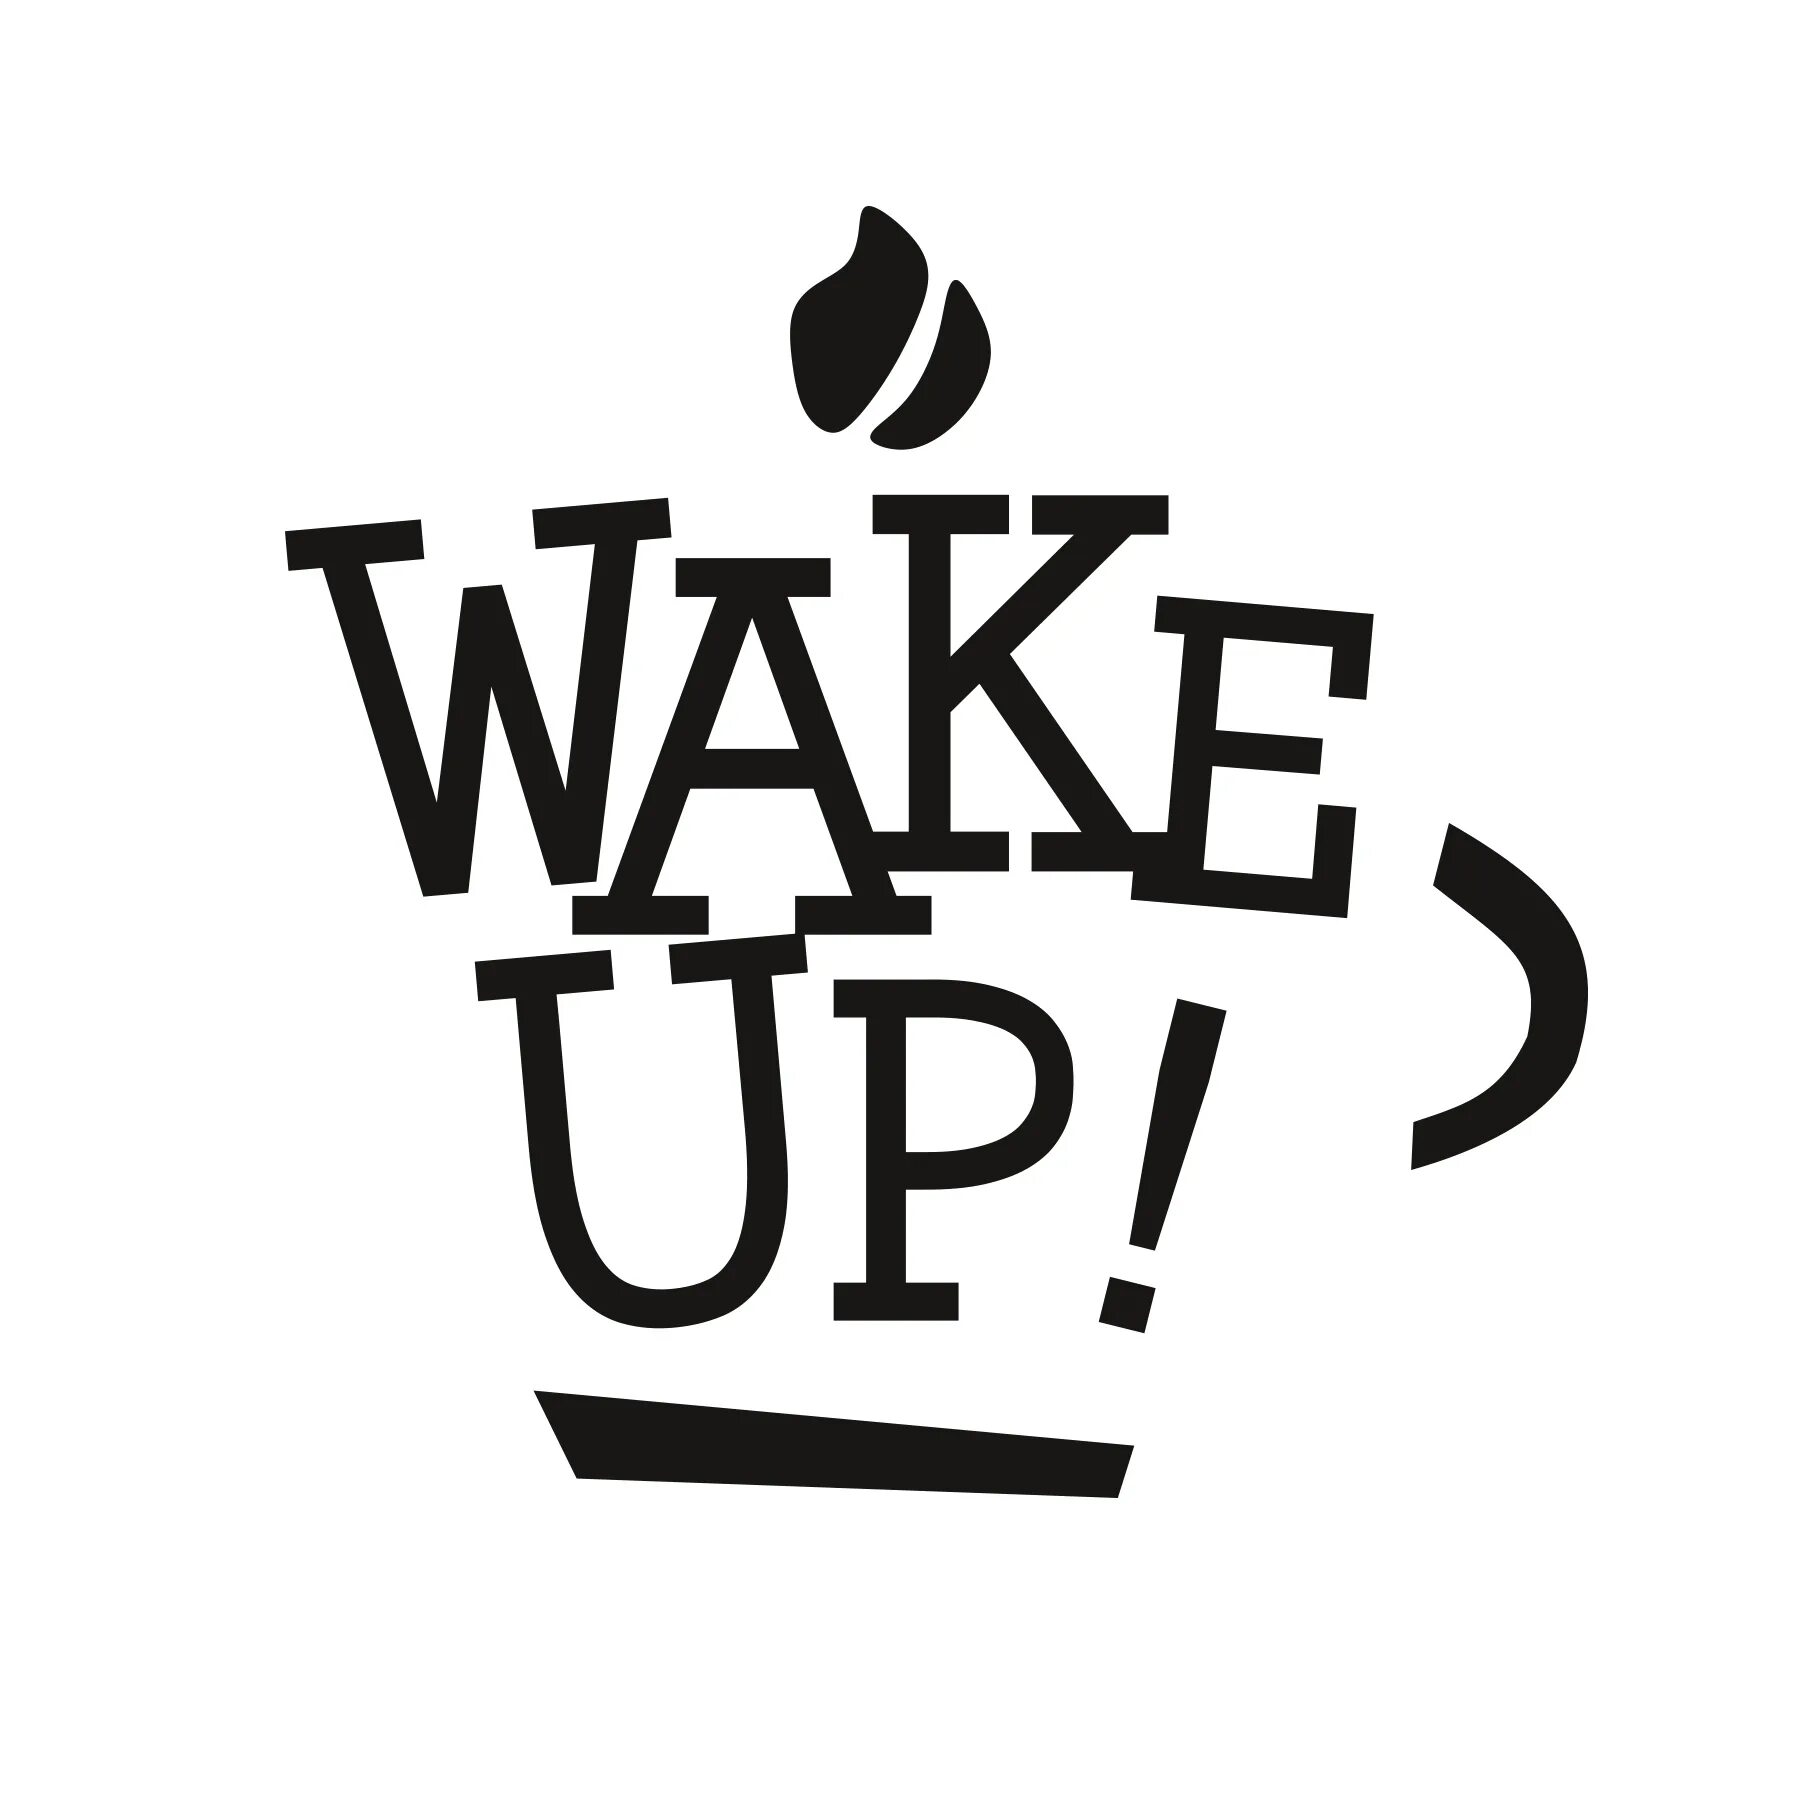 Wake up already. Wake up кофейня. Wake up надпись. Логотип вверх. Wake up картинка.